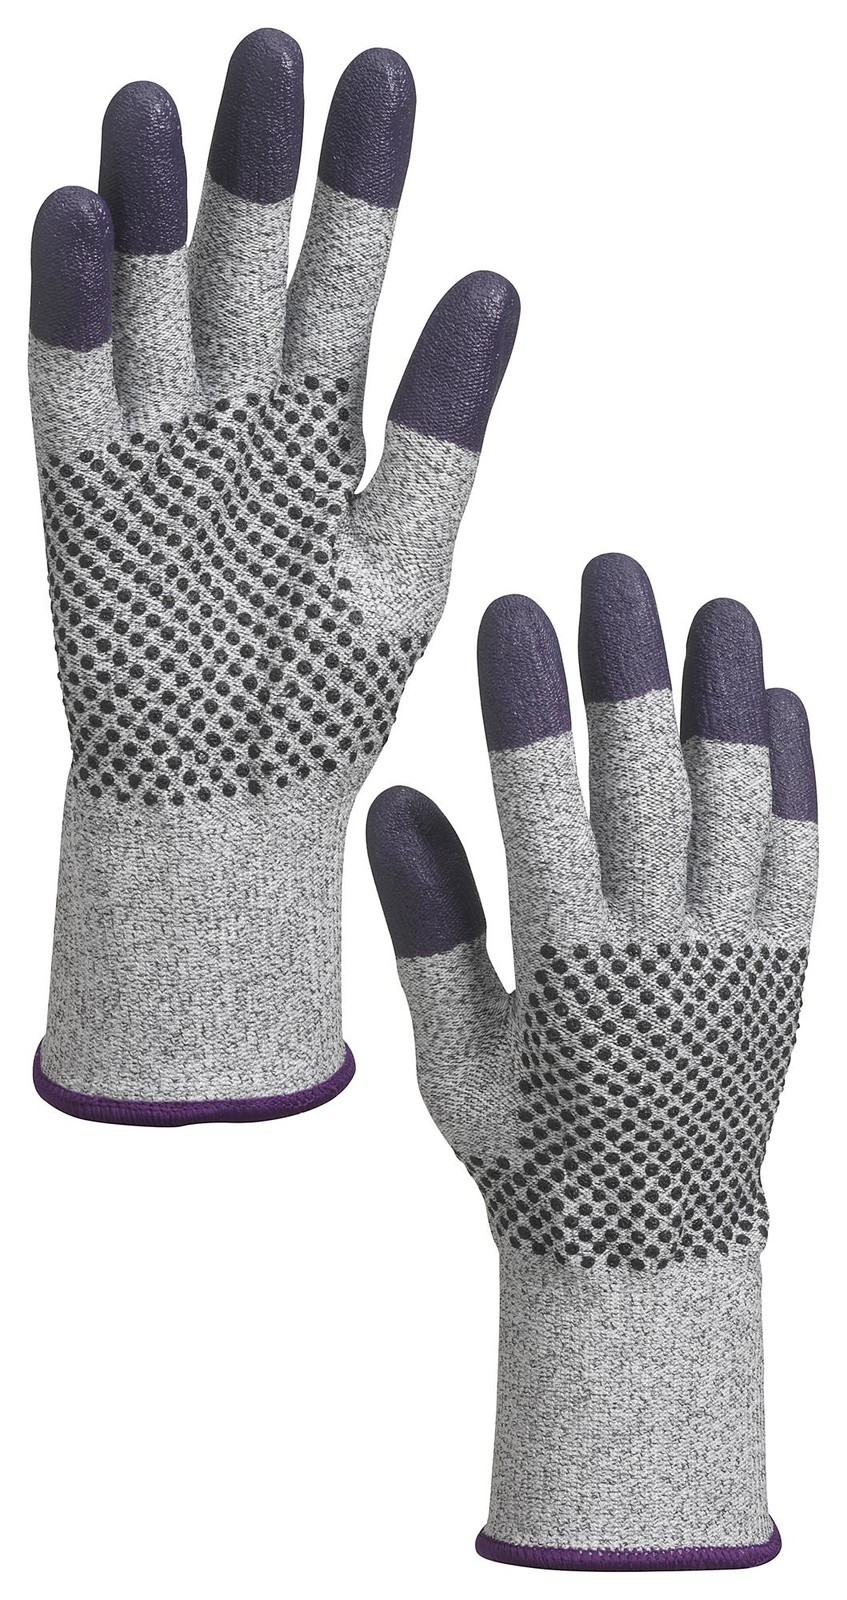 Kleenguard 97433 Glove, Knit Wrist, Xl, Blk/grey/purple